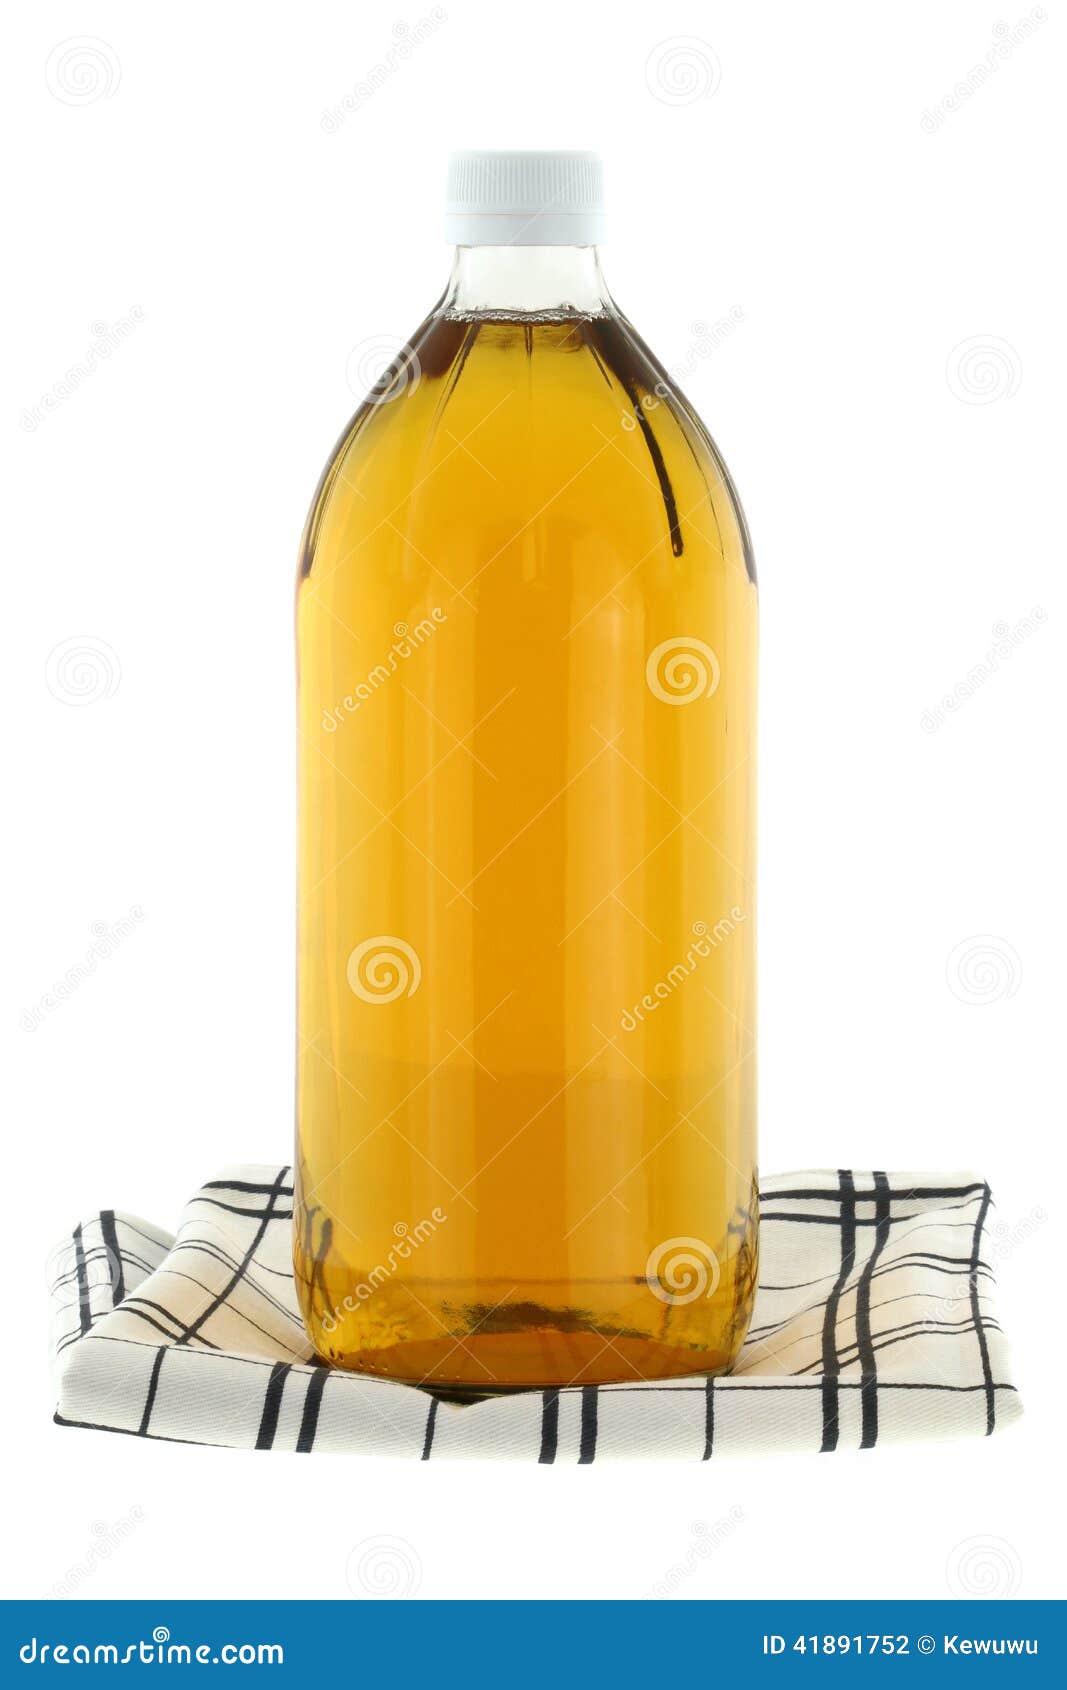 filtered apple cider vinegar